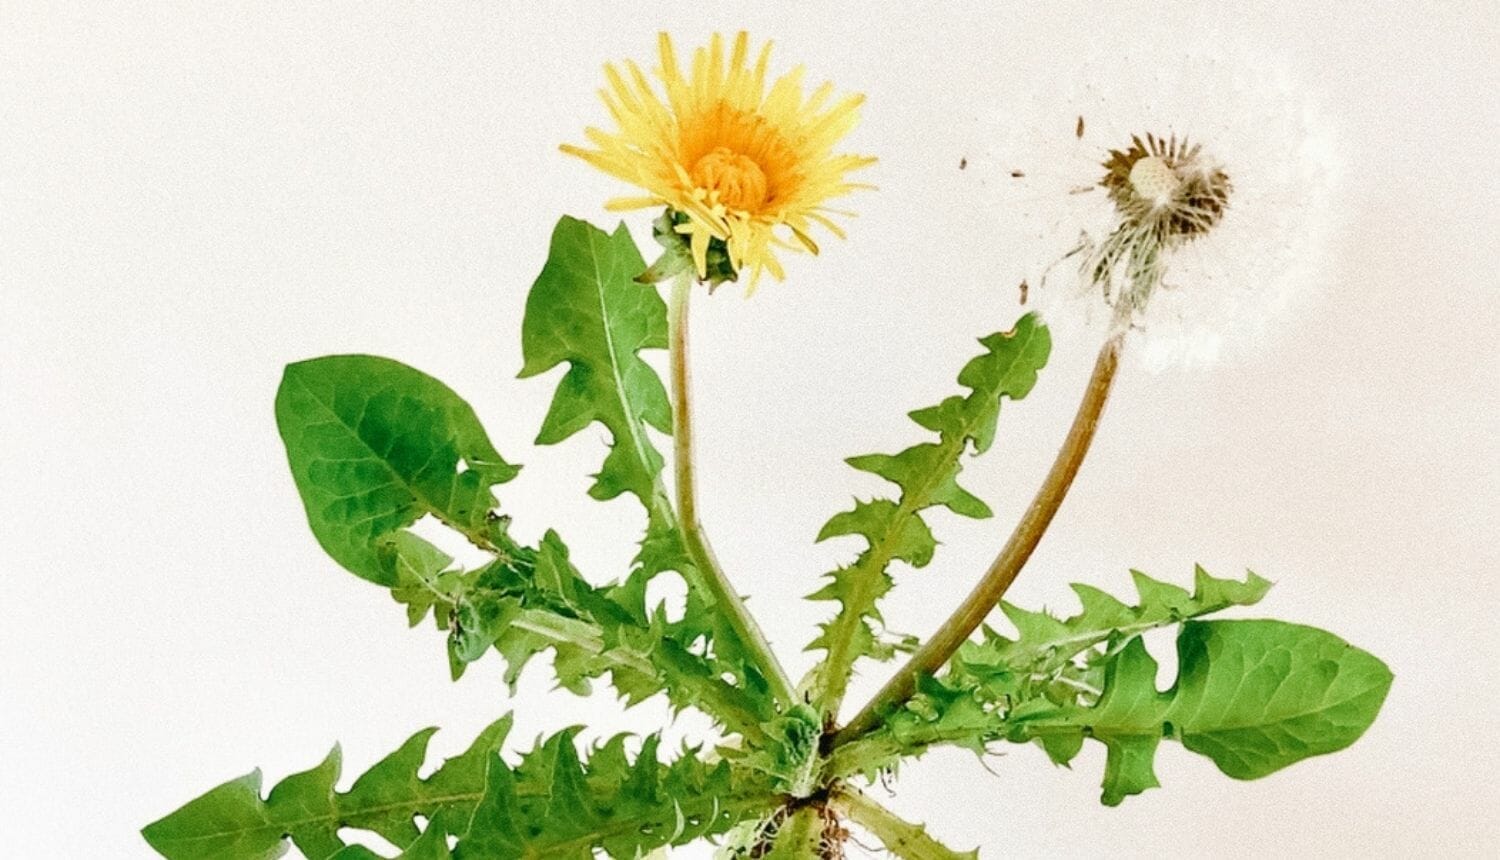 Luna Herbs_Wildkräuter Blog_ 8 sekundäre Pflanzenstoffe die Du kennen solltest3